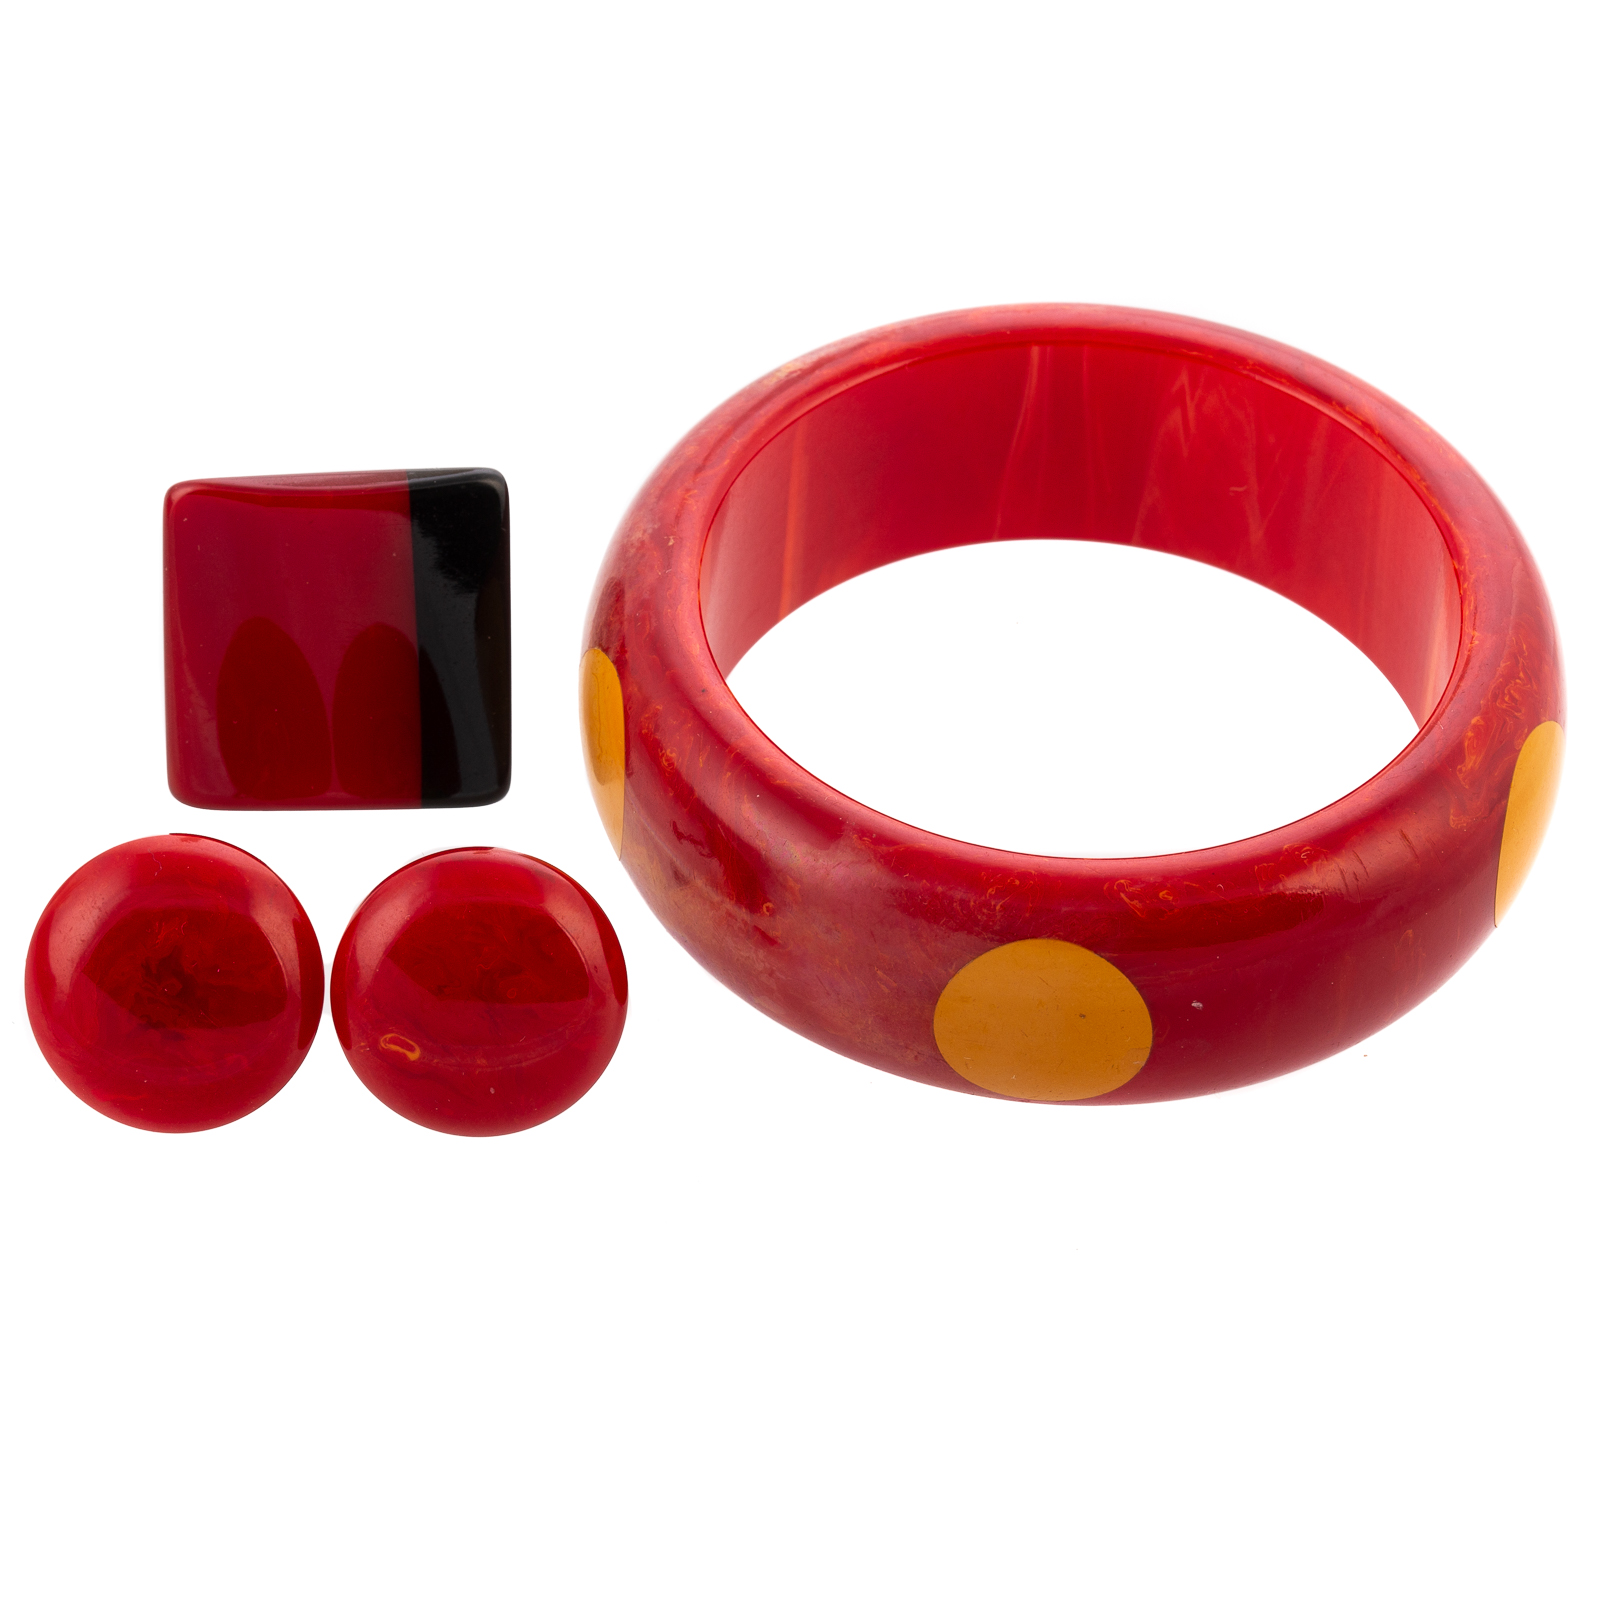 A RED BAKELITE BANGLE, RING & EARRINGS